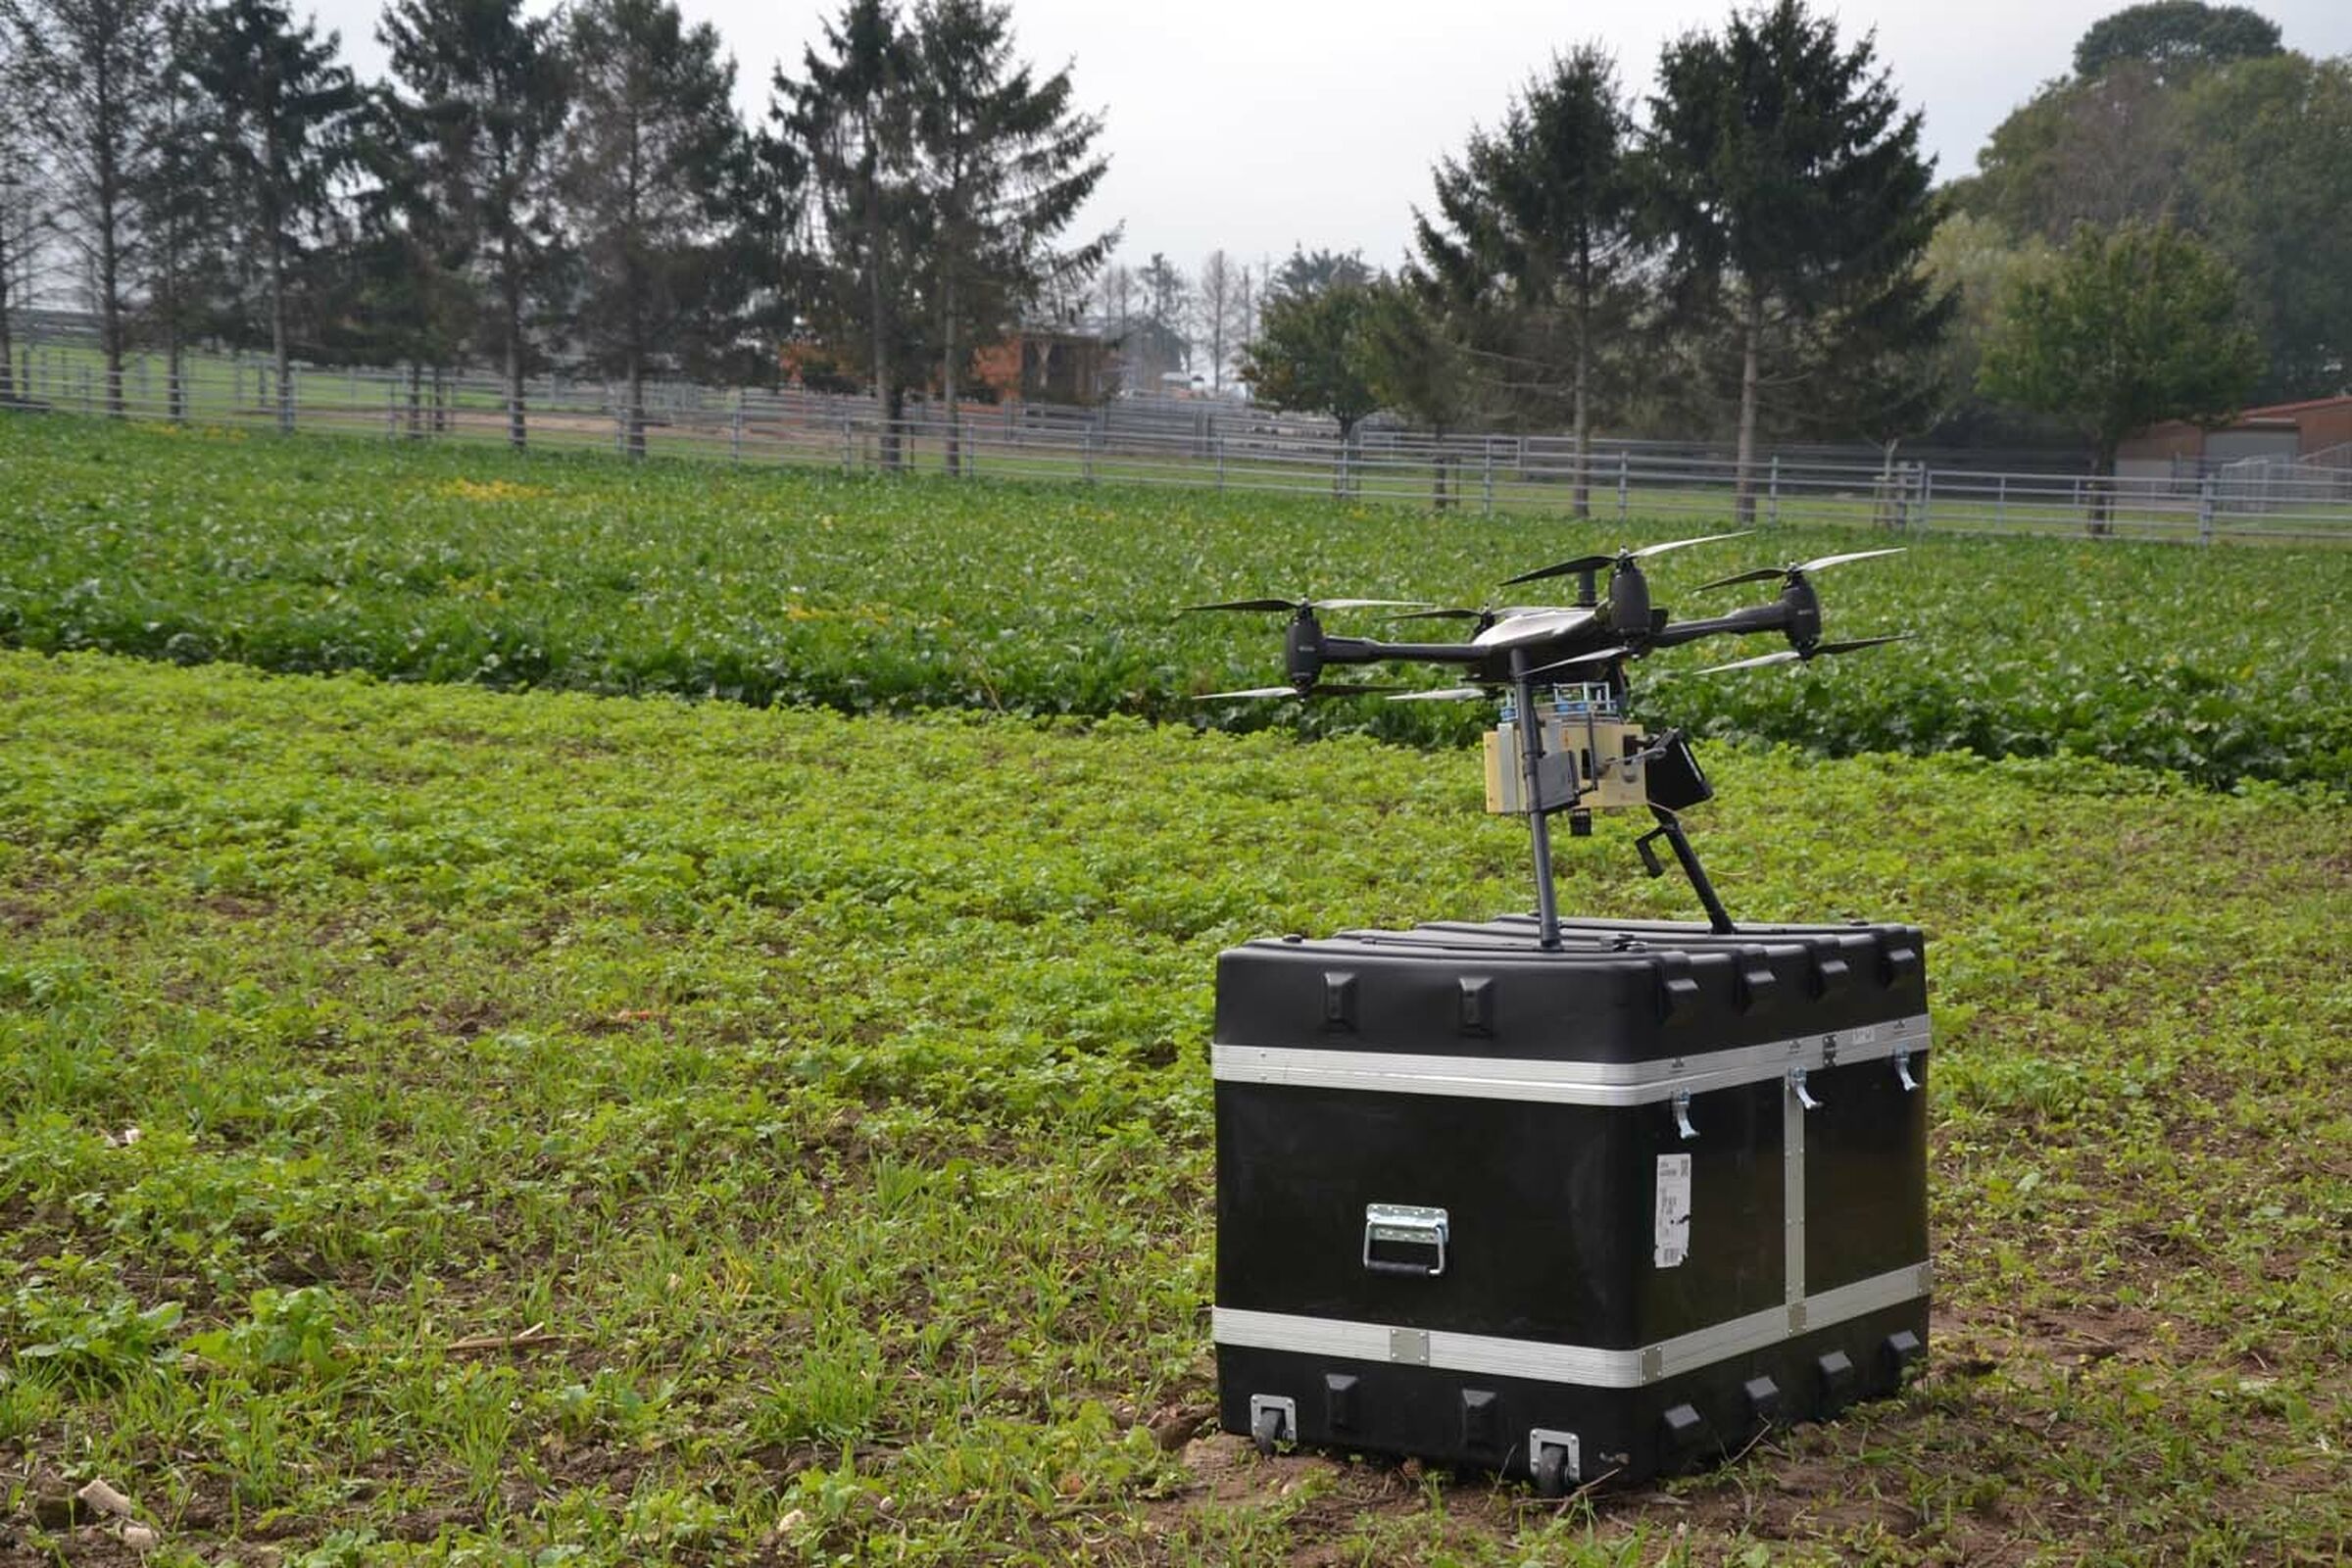 Sesvanderhave sugar beet varieties plant breeding phenotyping beetphen drone